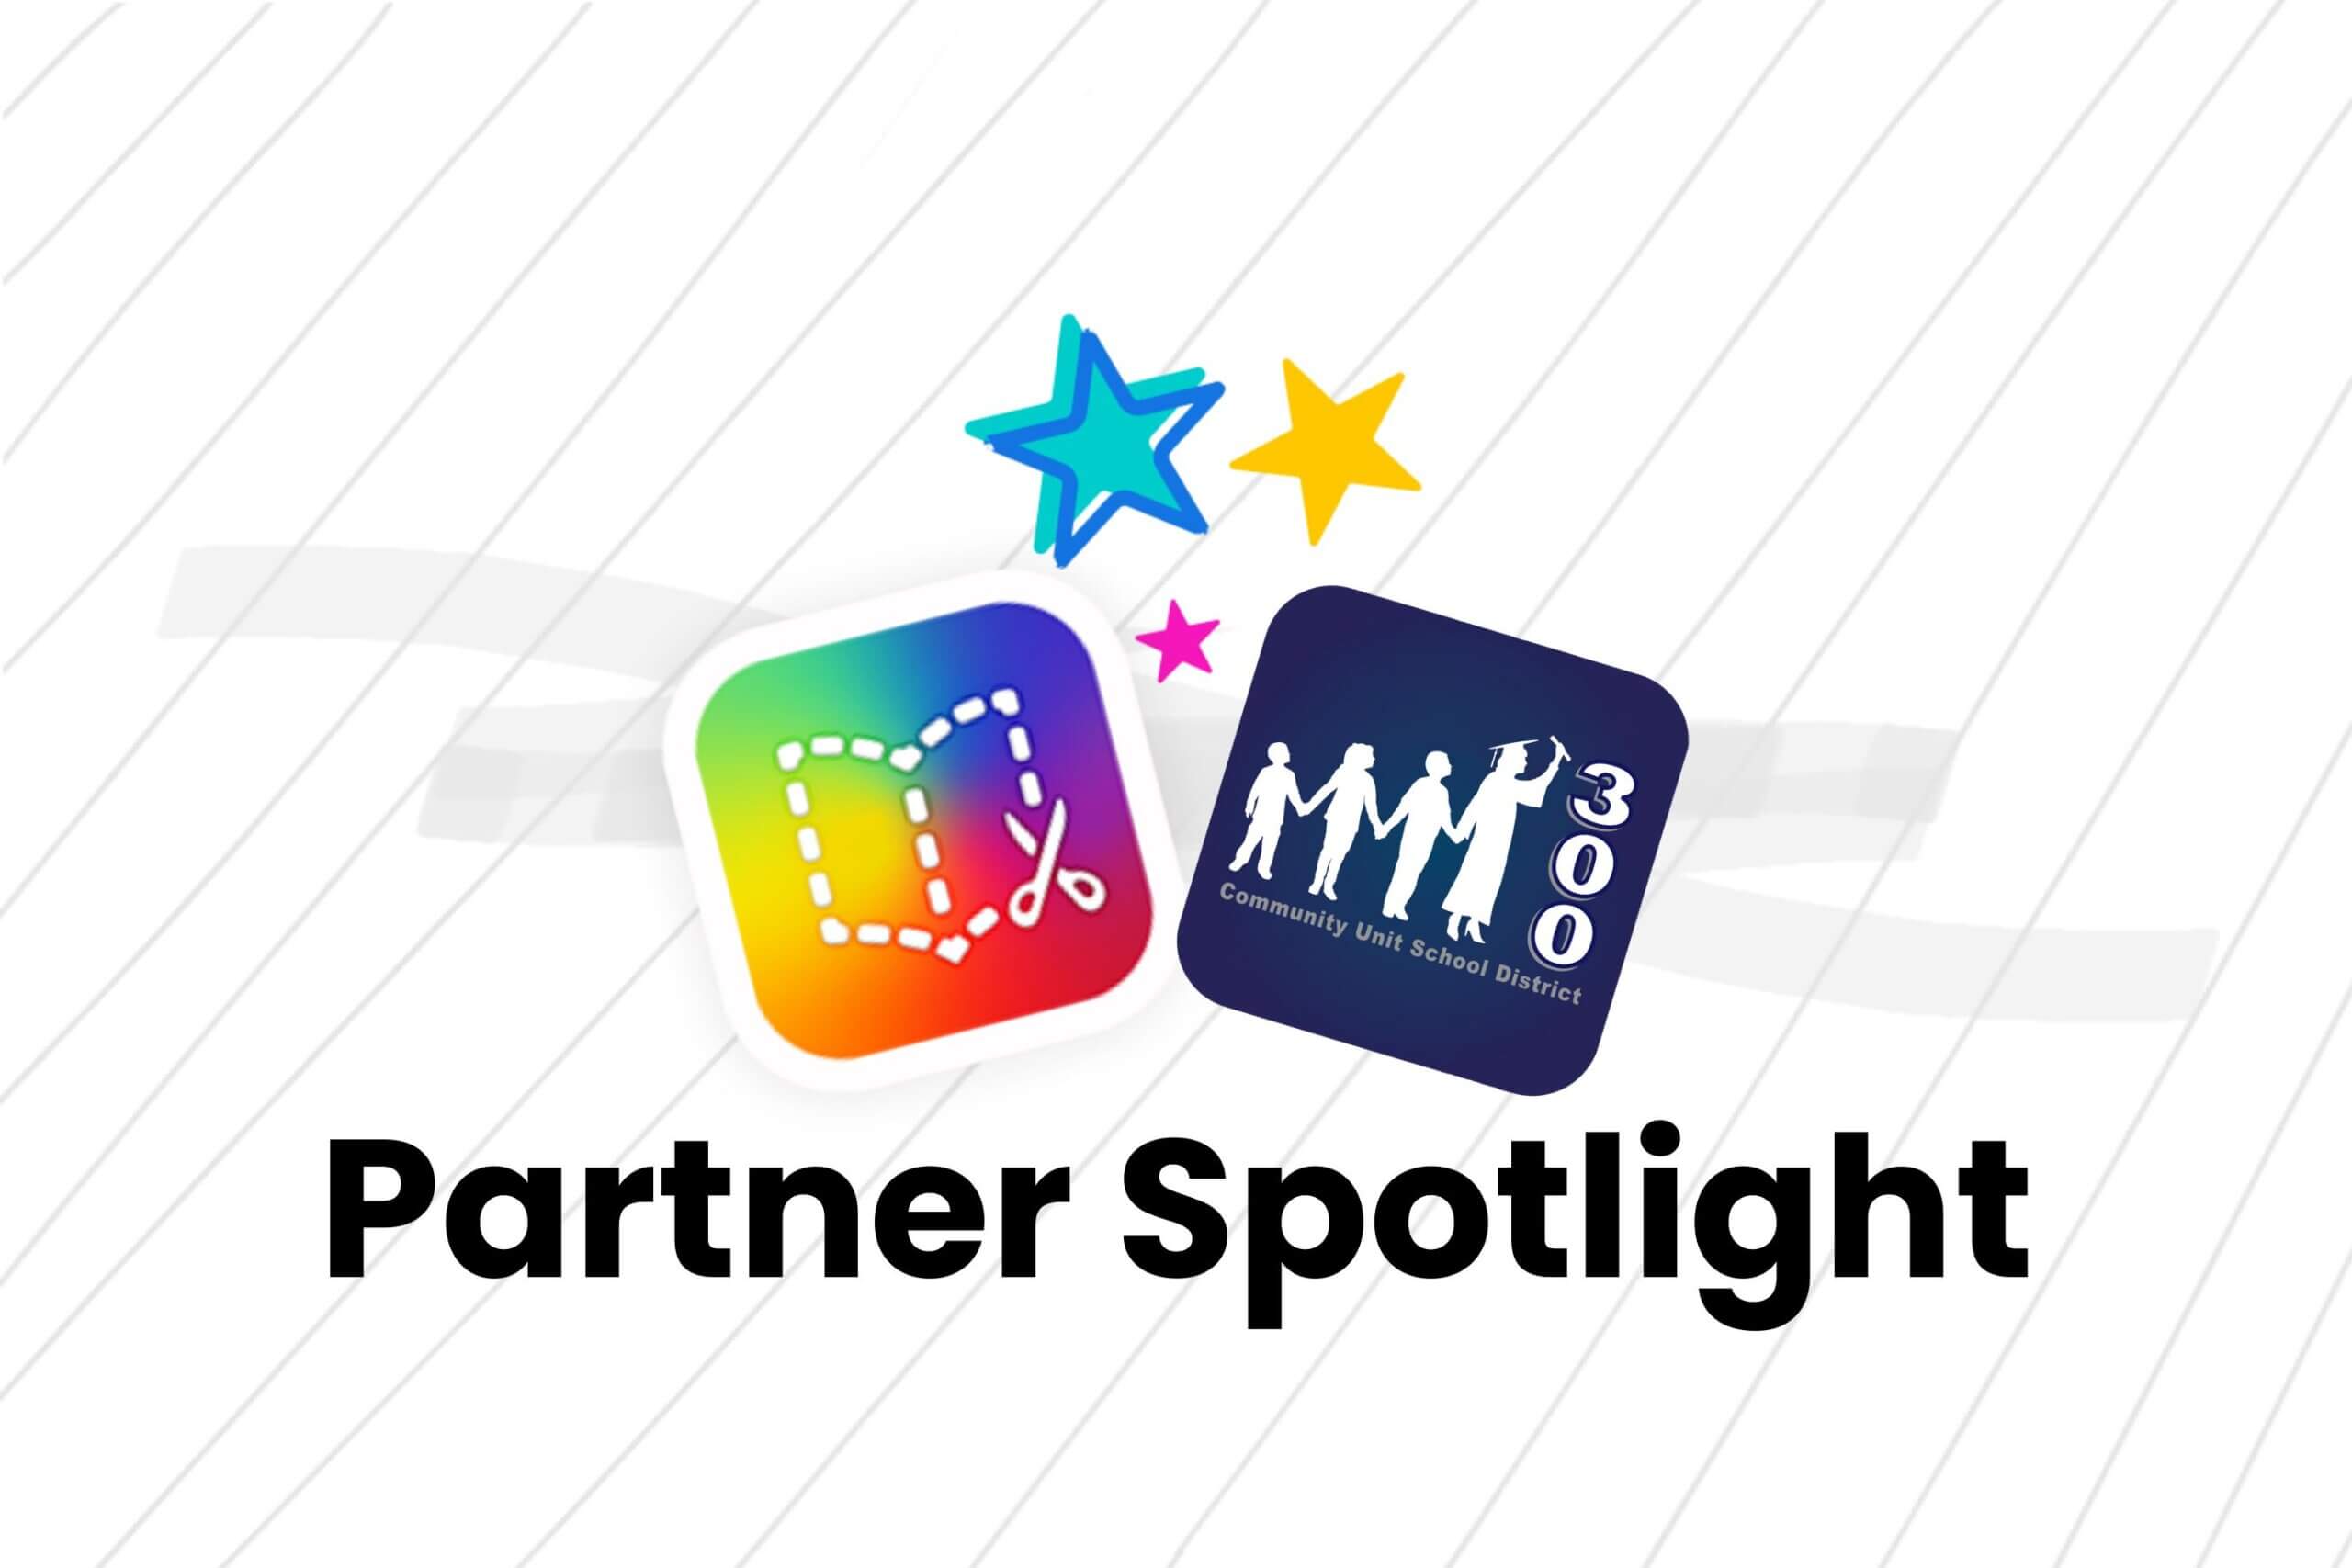 Partner Spotlight